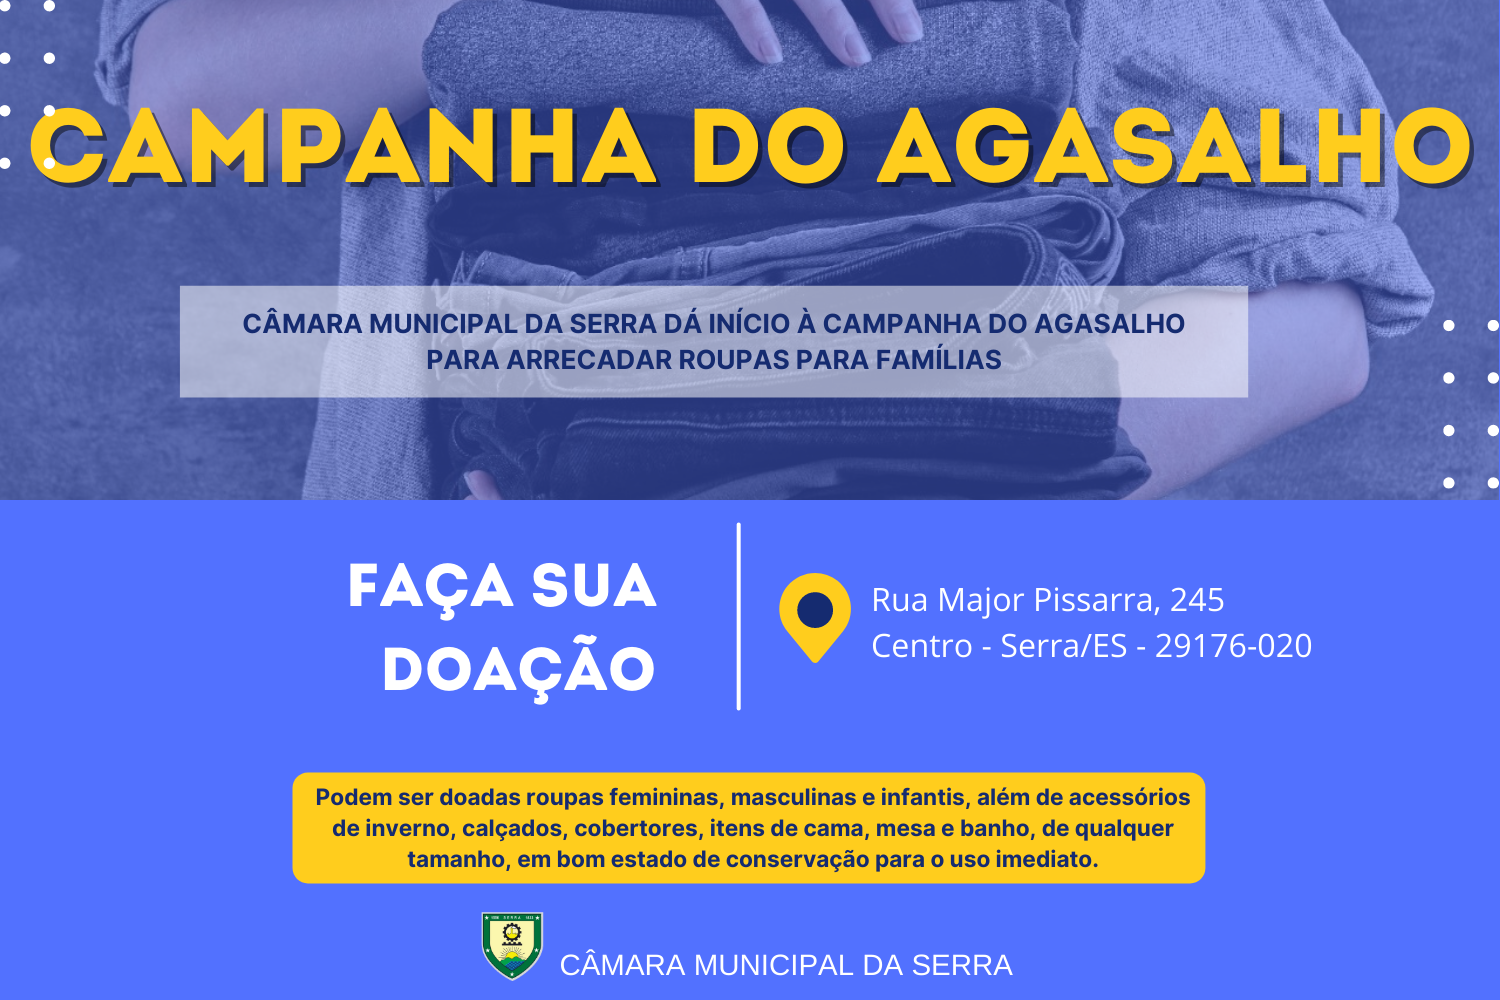 Câmara Municipal da Serra dá início à Campanha do Agasalho para arrecadar roupas para famílias.